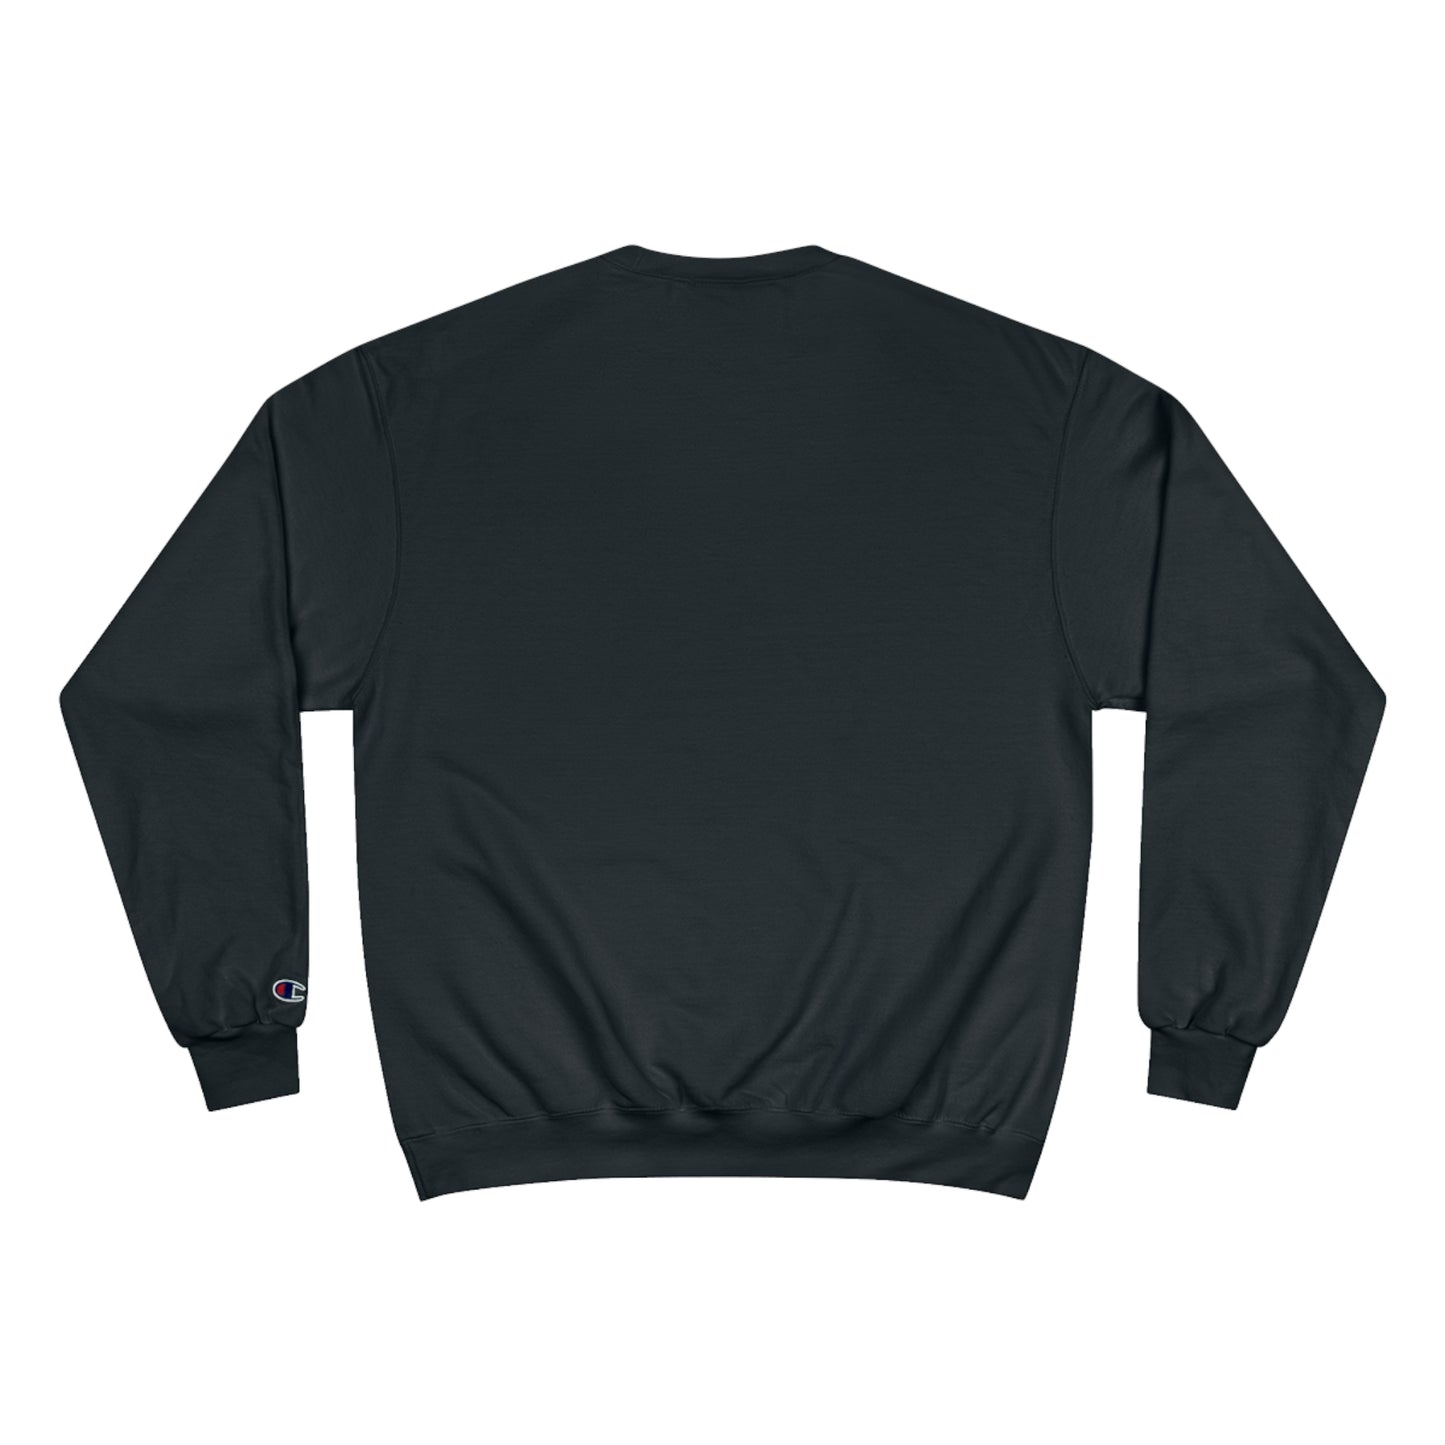 5280 Denver Champion® Sweatshirt